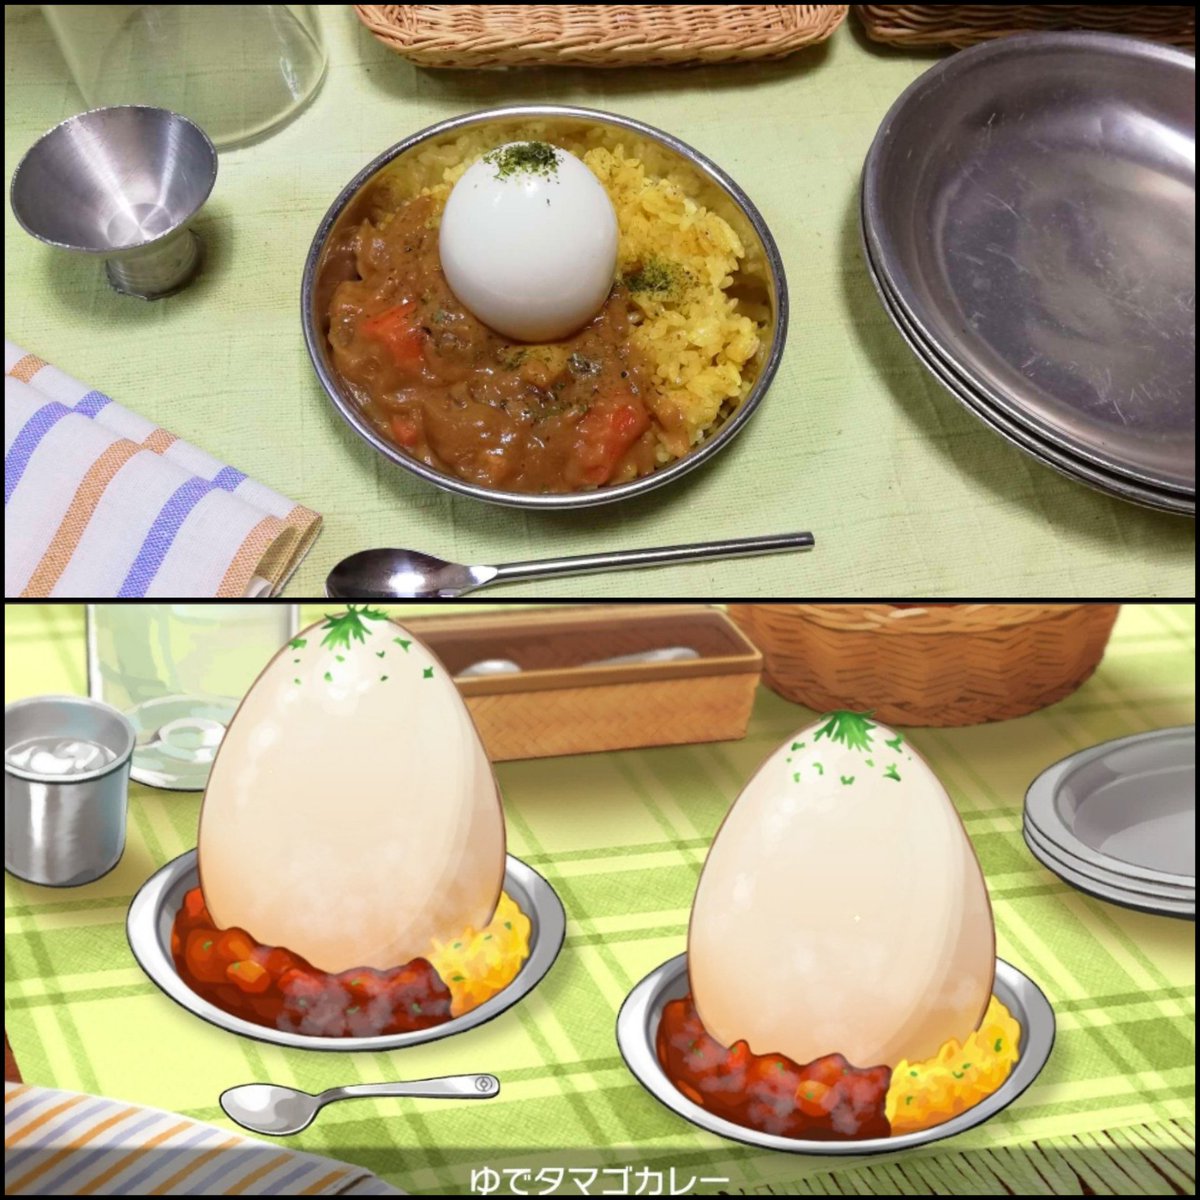 シャンプー アニメ再現料理人 No Twitter そしてこれが ダチョウの卵で作るはずだったゆでたまごカレーとクラッシュした悲しみのゆでダチョウ の卵